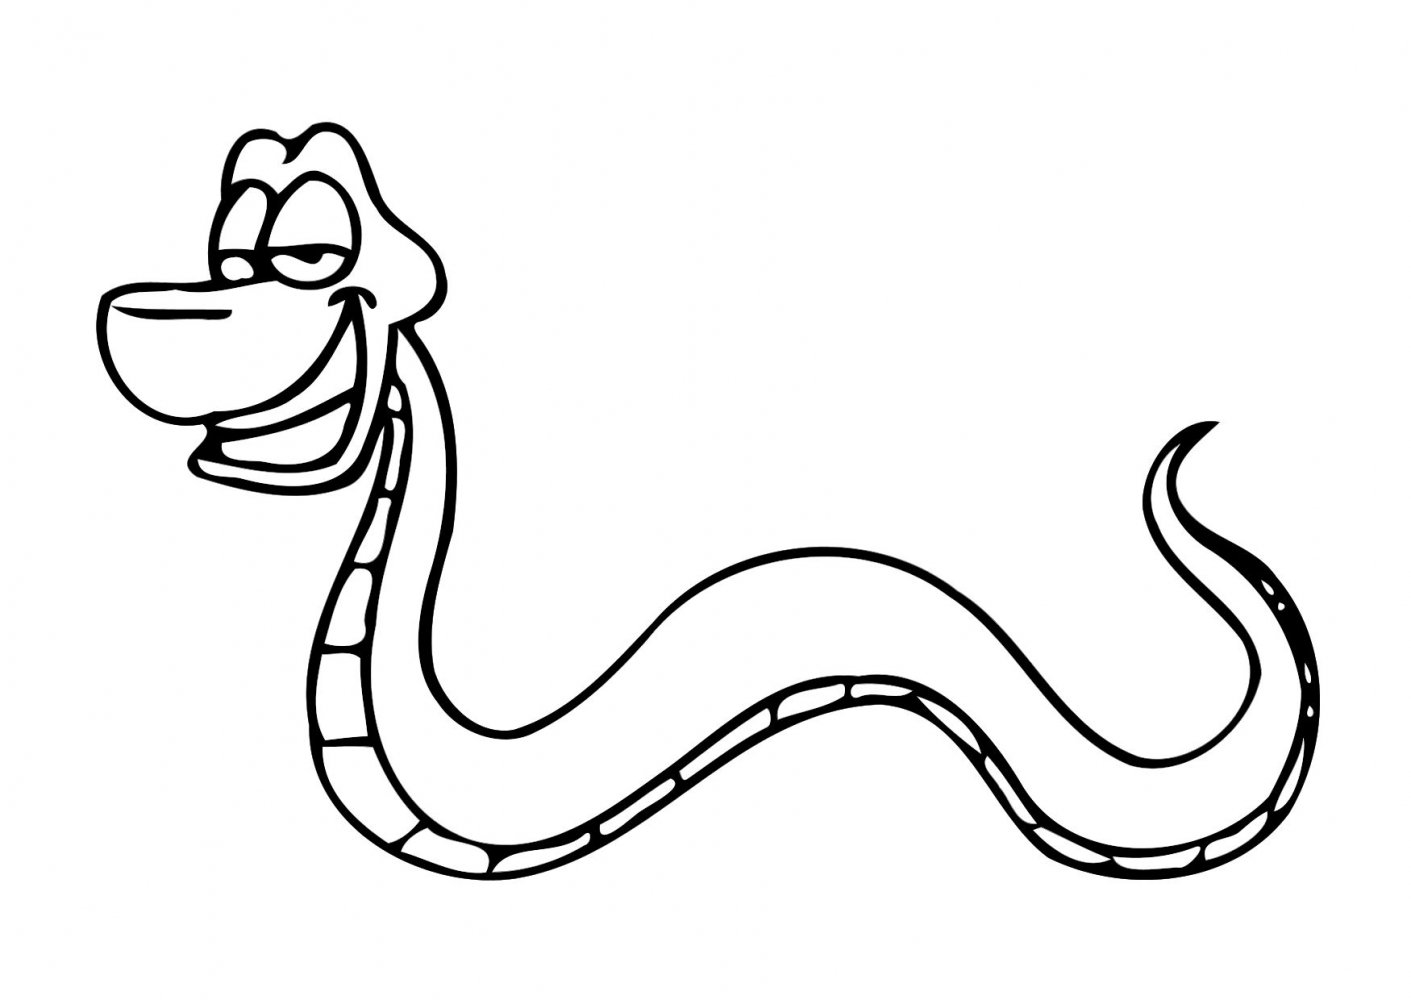 Змейка раскраска для детей